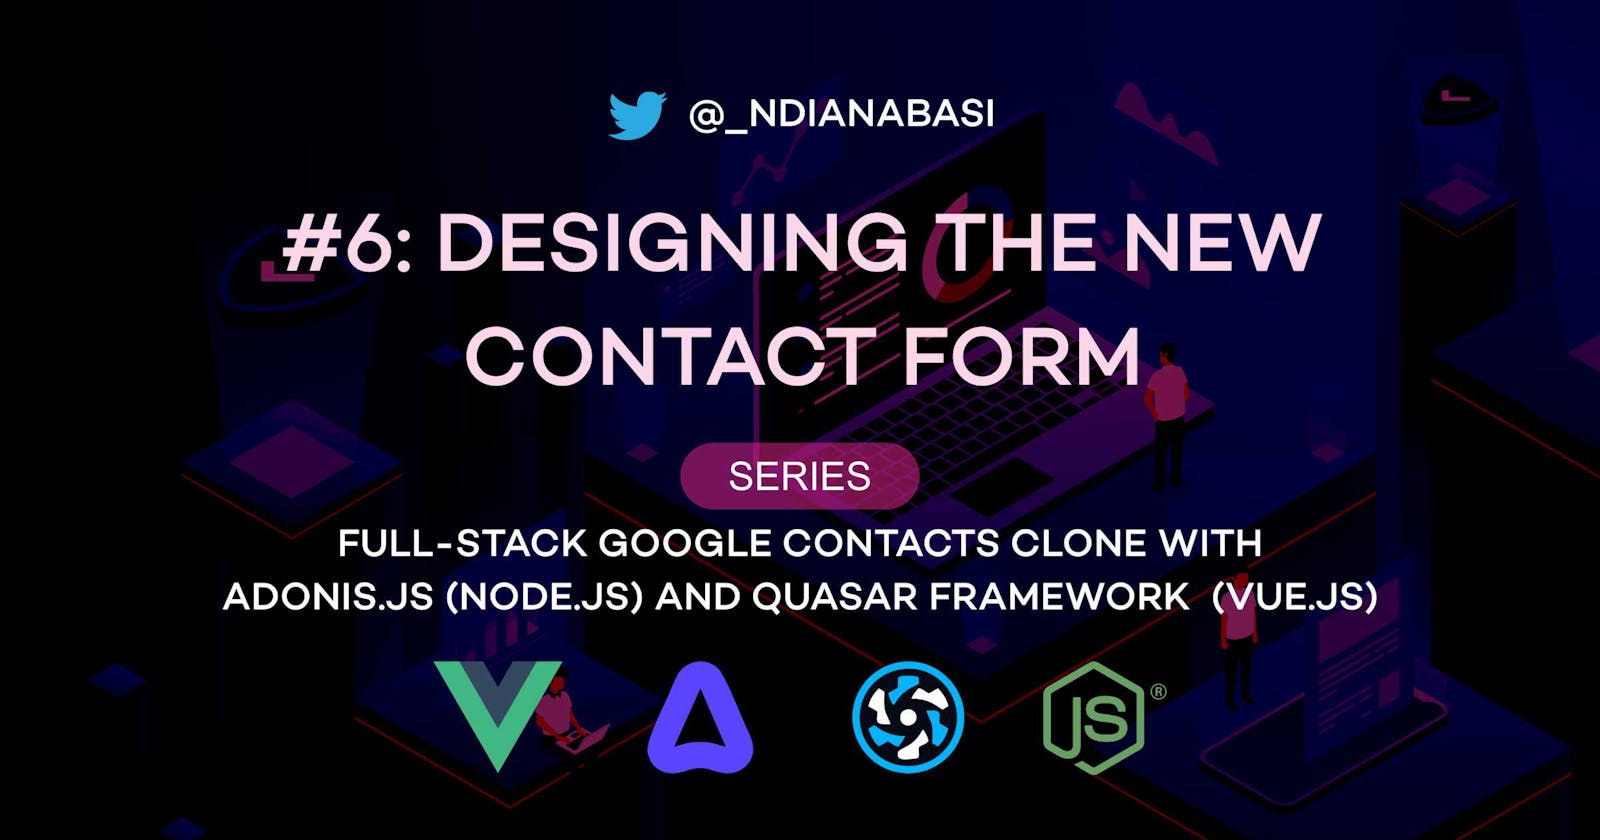 New Contact Form Design | Full-Stack Google Contacts Clone with Adonis.js/Node.js and Quasar (Vue.js)